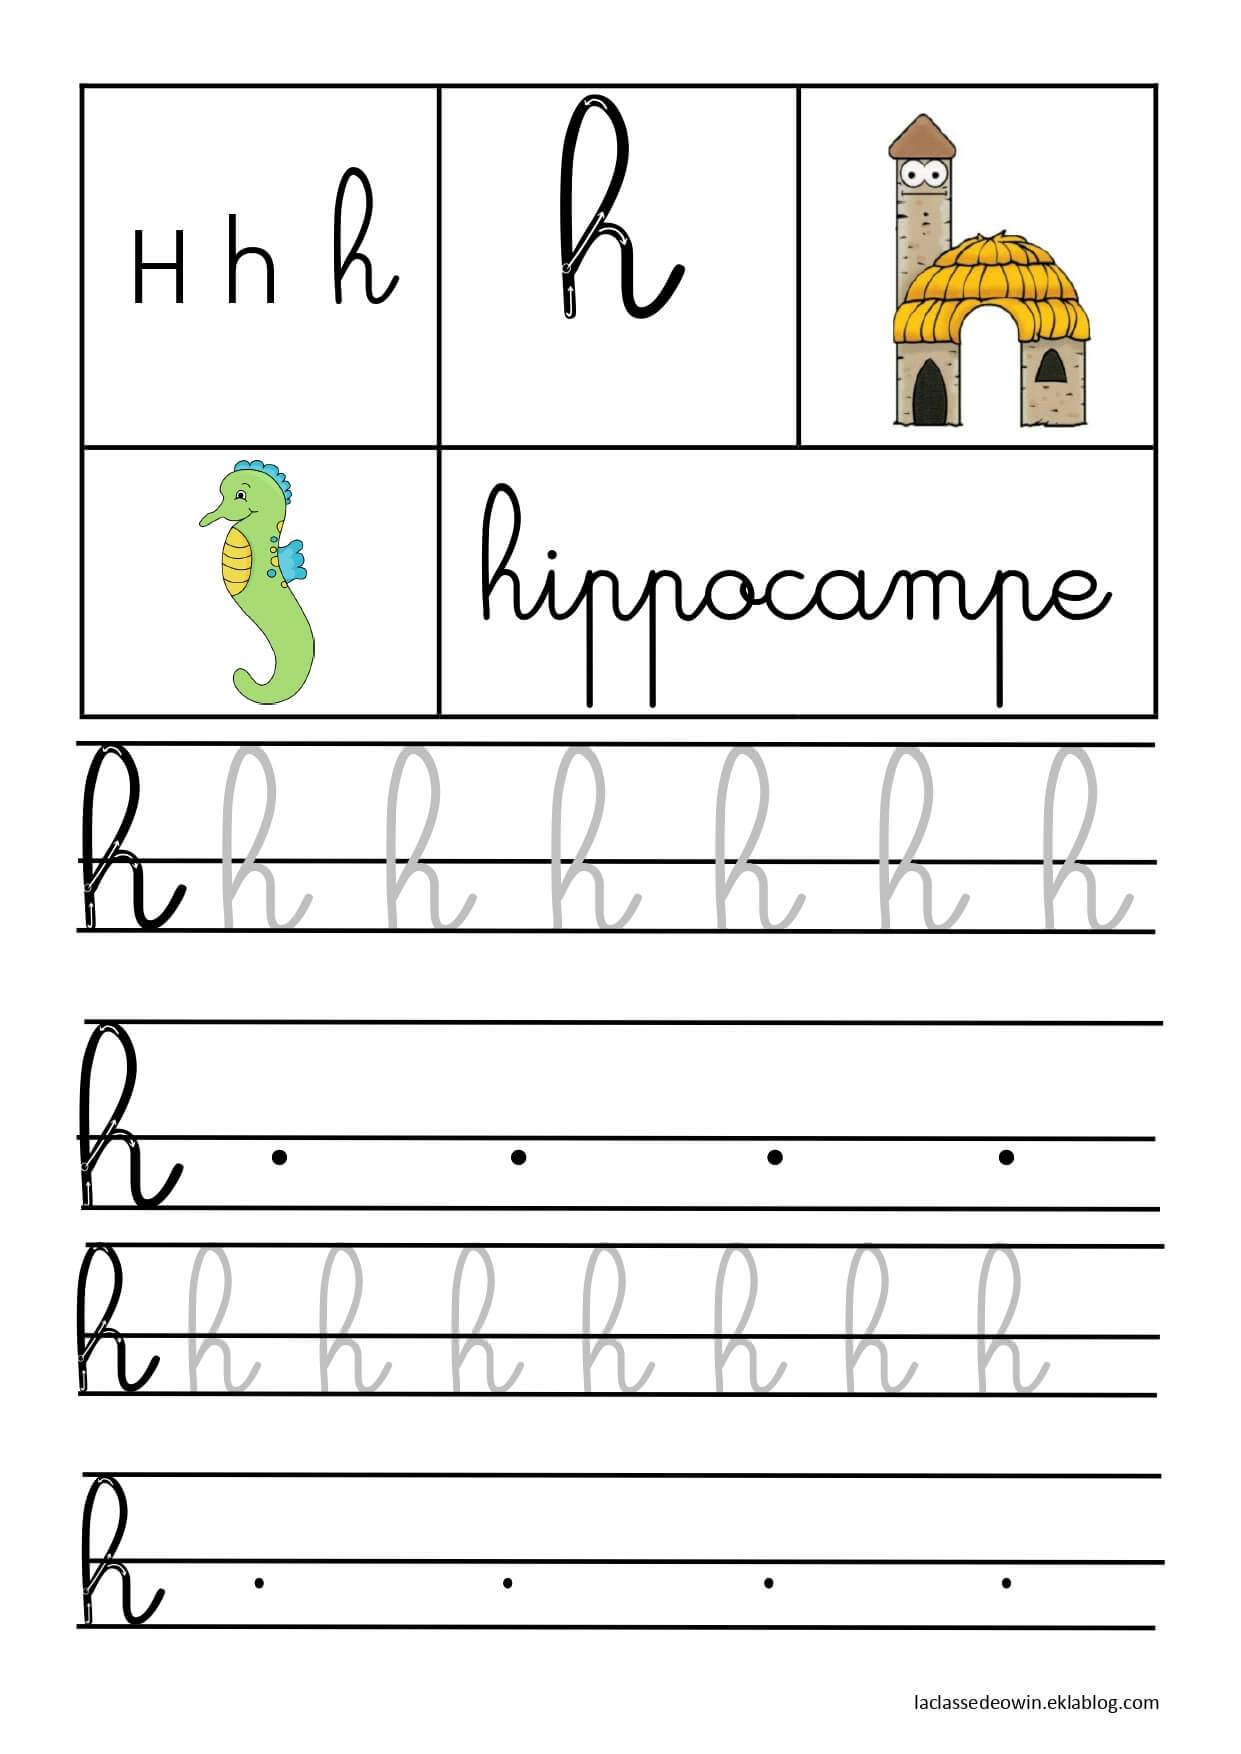   Lettre H pour hippocampe, écriture cursive GS 